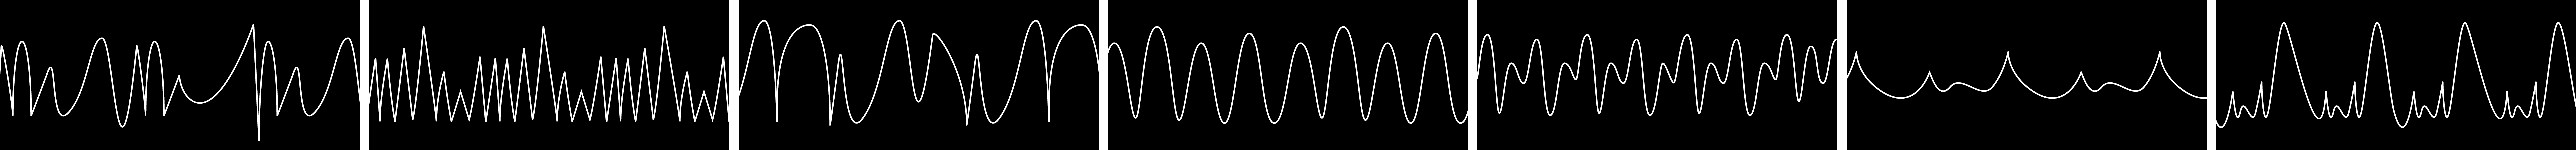 Графические изображения 7 разных звуковых волн